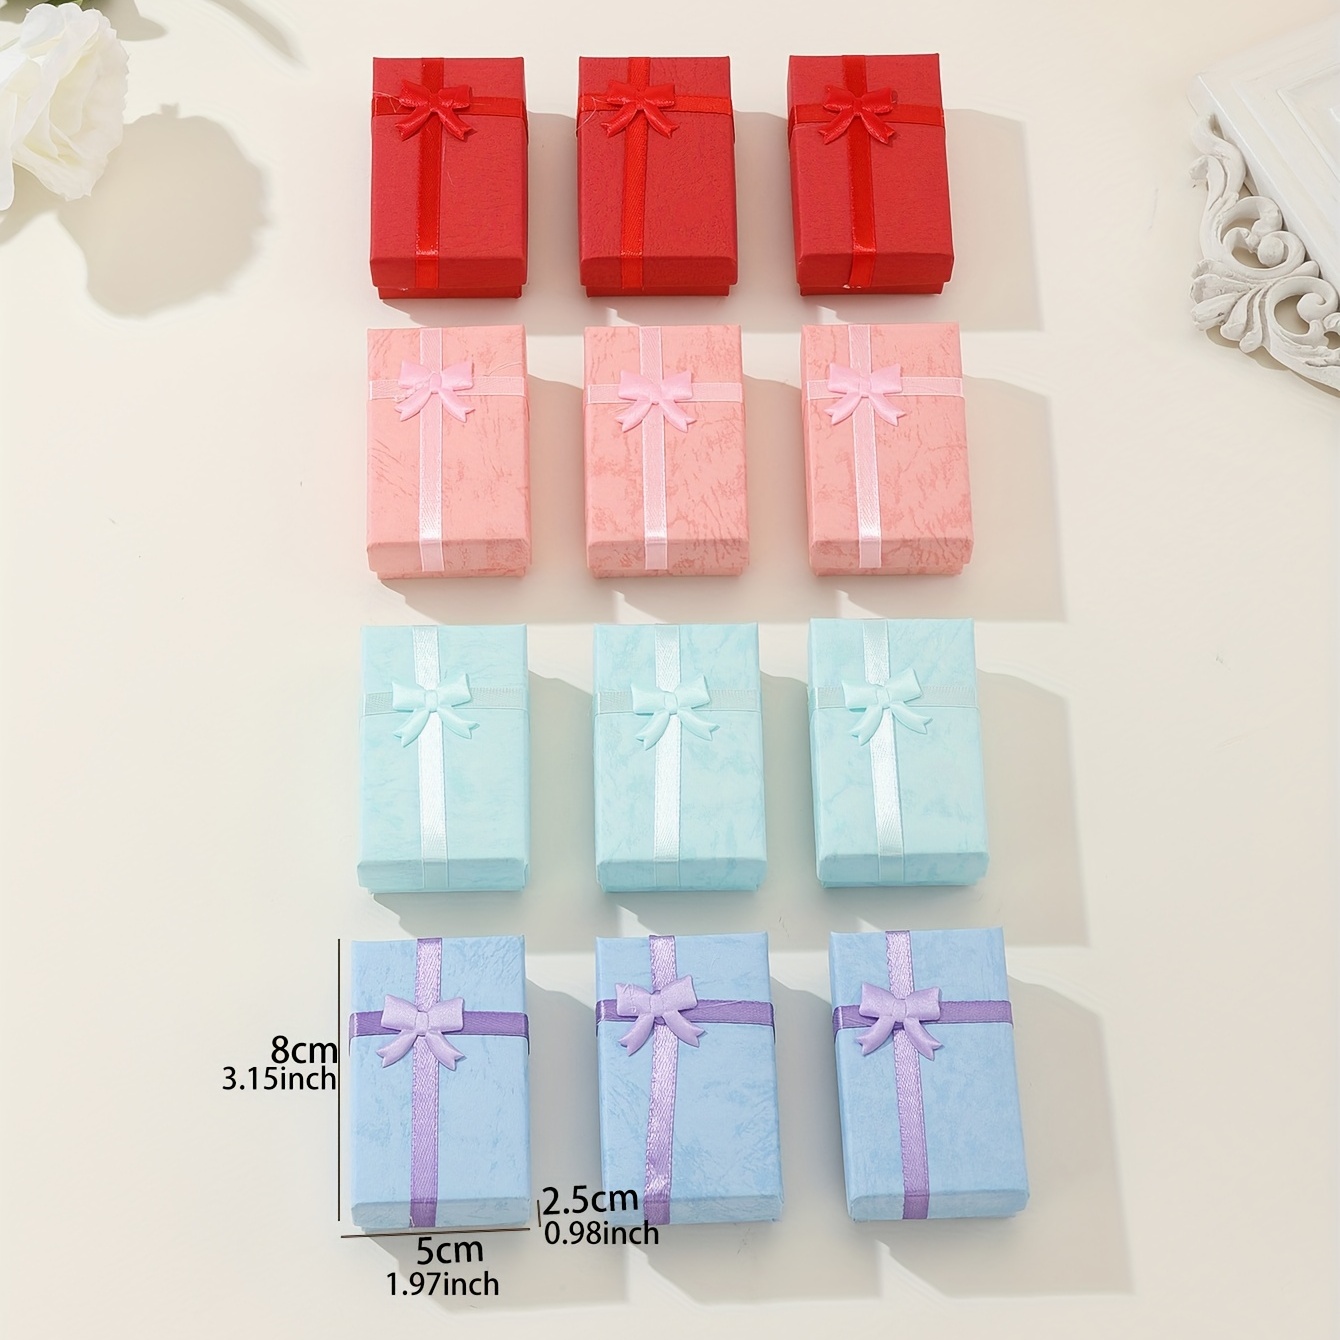 Light Pink Paper Boxjewelry Boxrings Box Craft Jewelry Gift 